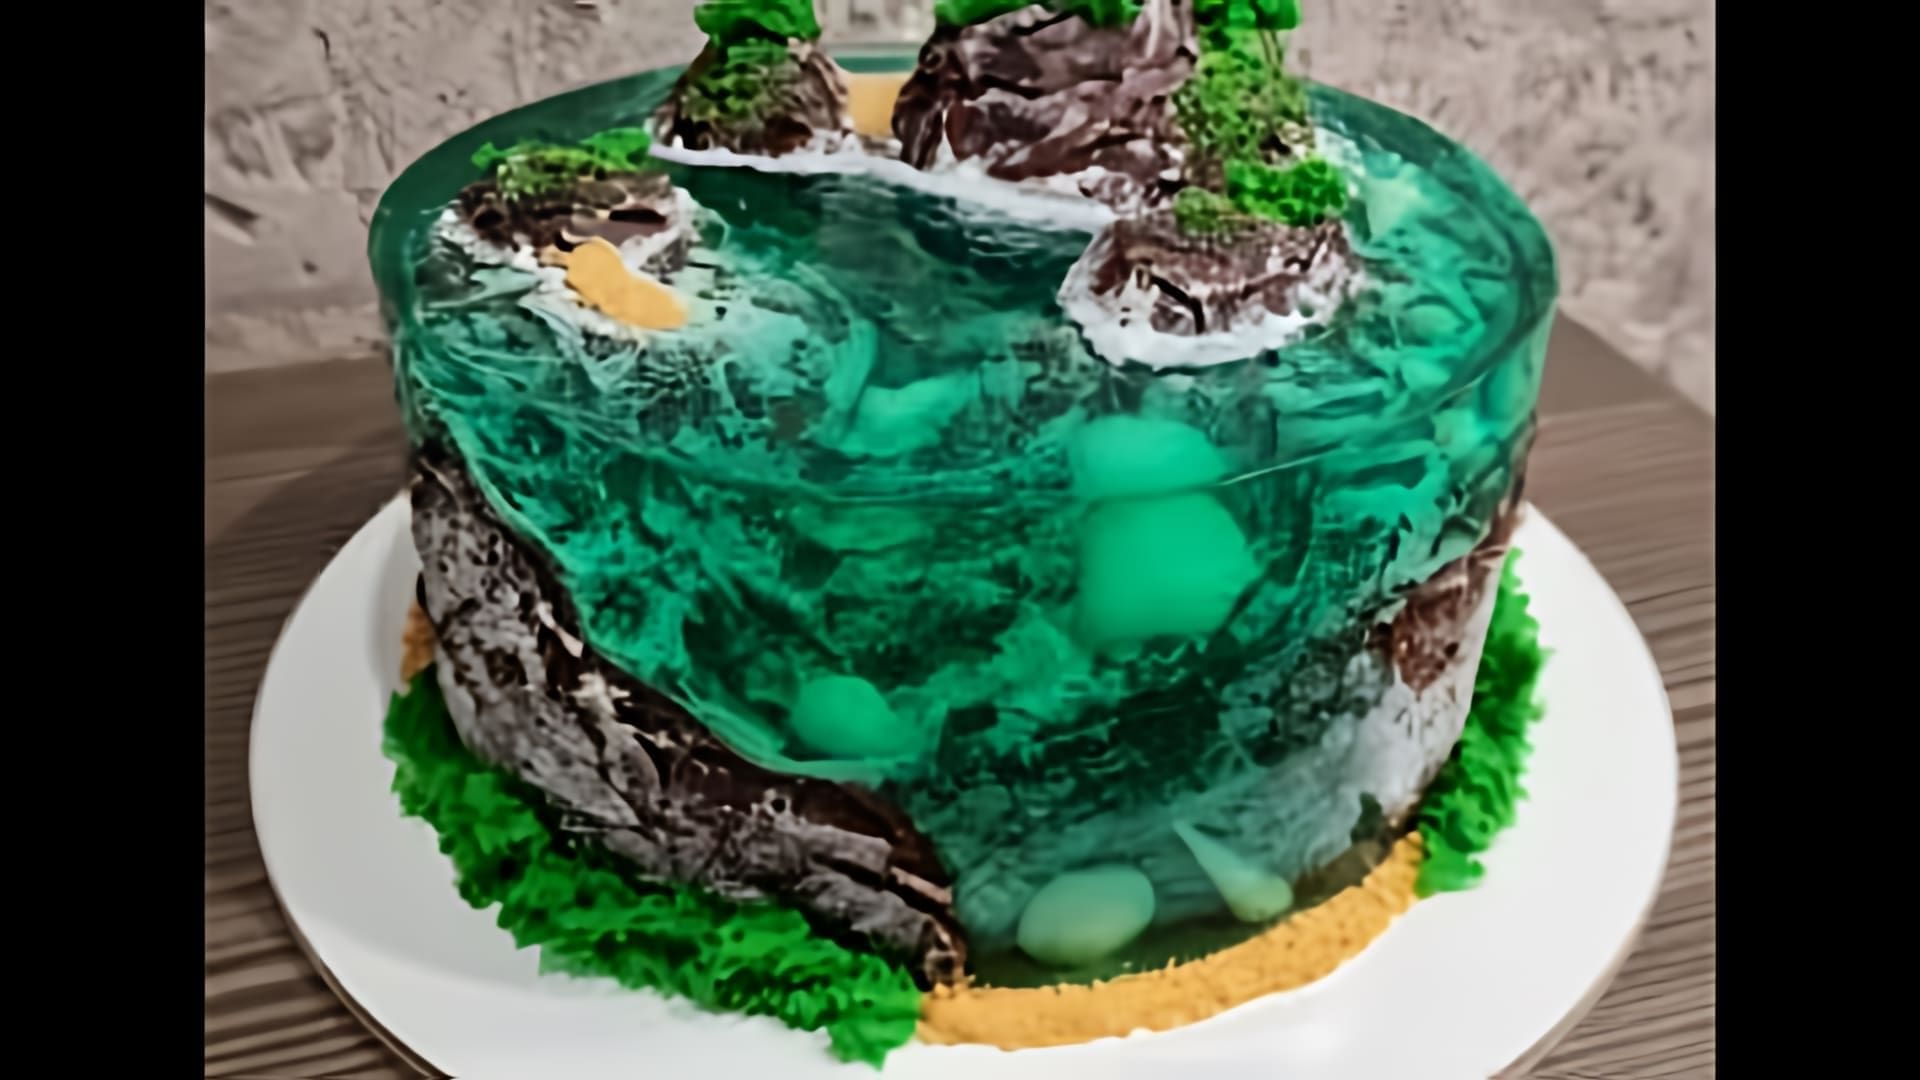 В этом видео демонстрируется рецепт приготовления торта "Торт Остров"